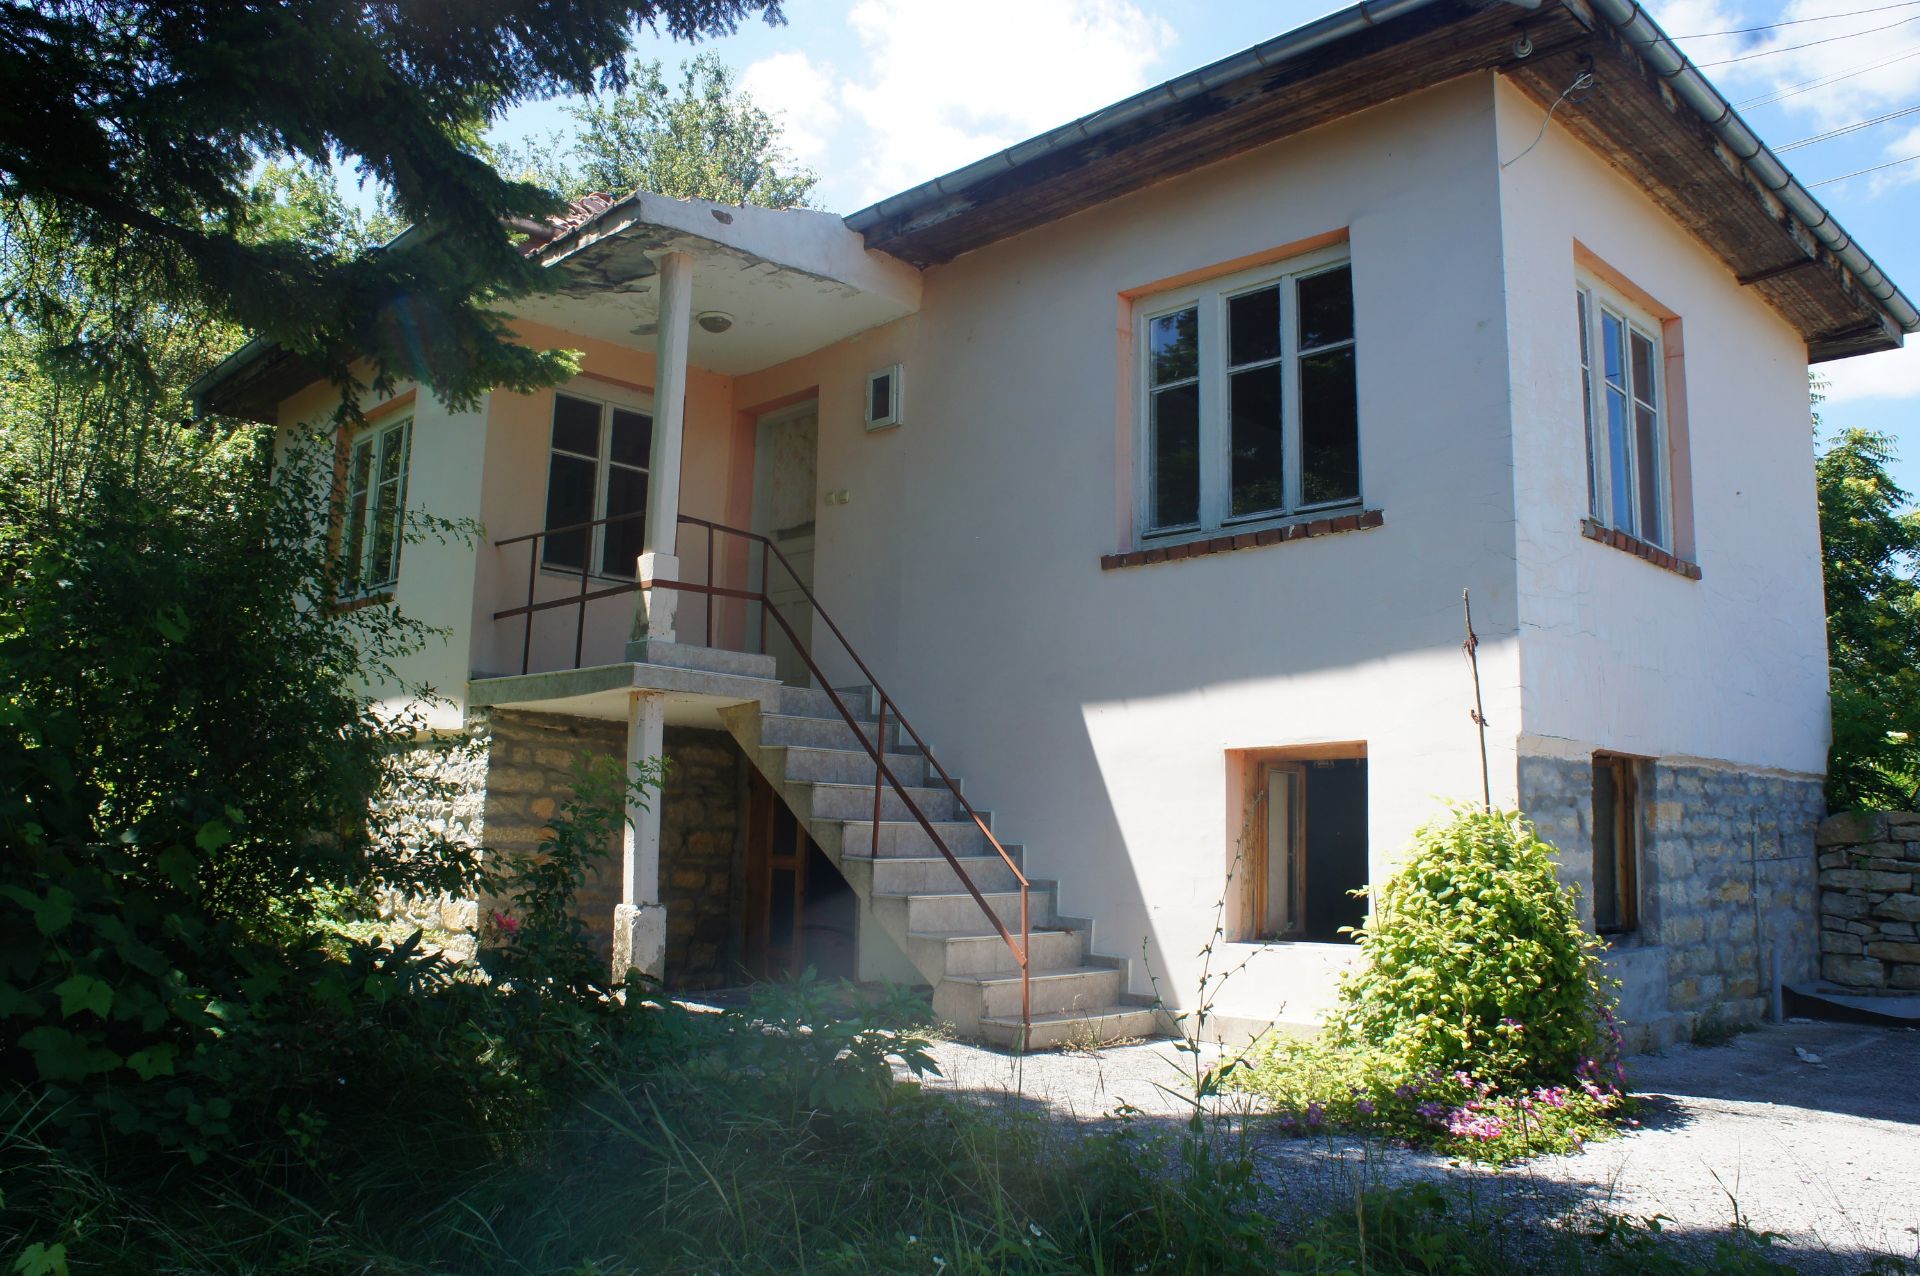 IMMACULATE Freehold Home and Land NR Veliko Tarnovo, Bulgaria - Image 2 of 29